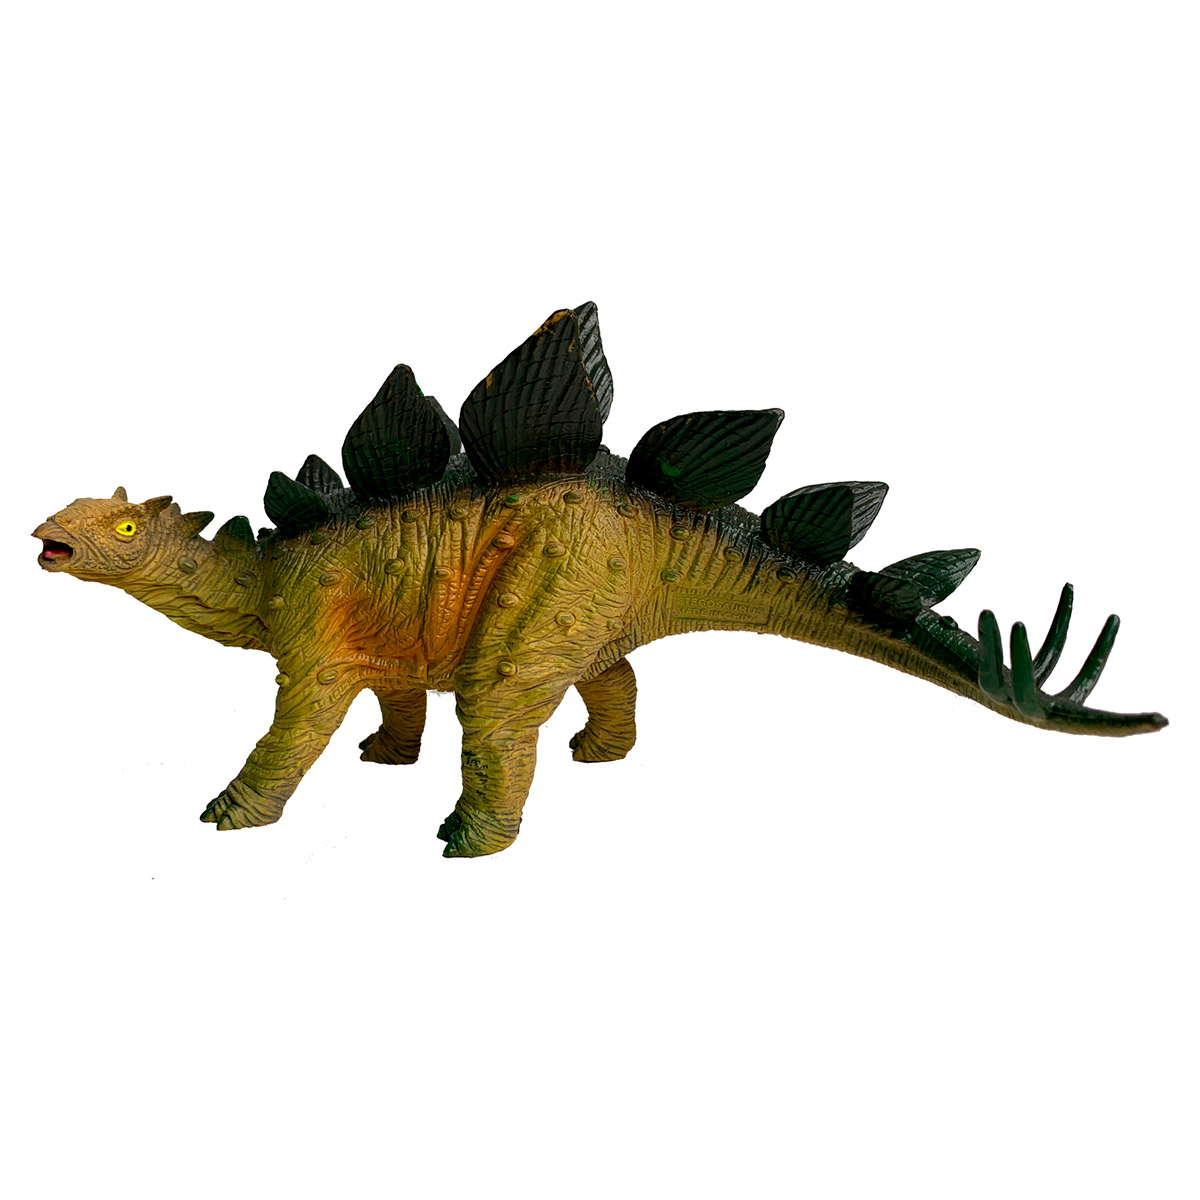 Фигурка динозавра "Стегозавр с повернутой головой", 21 см